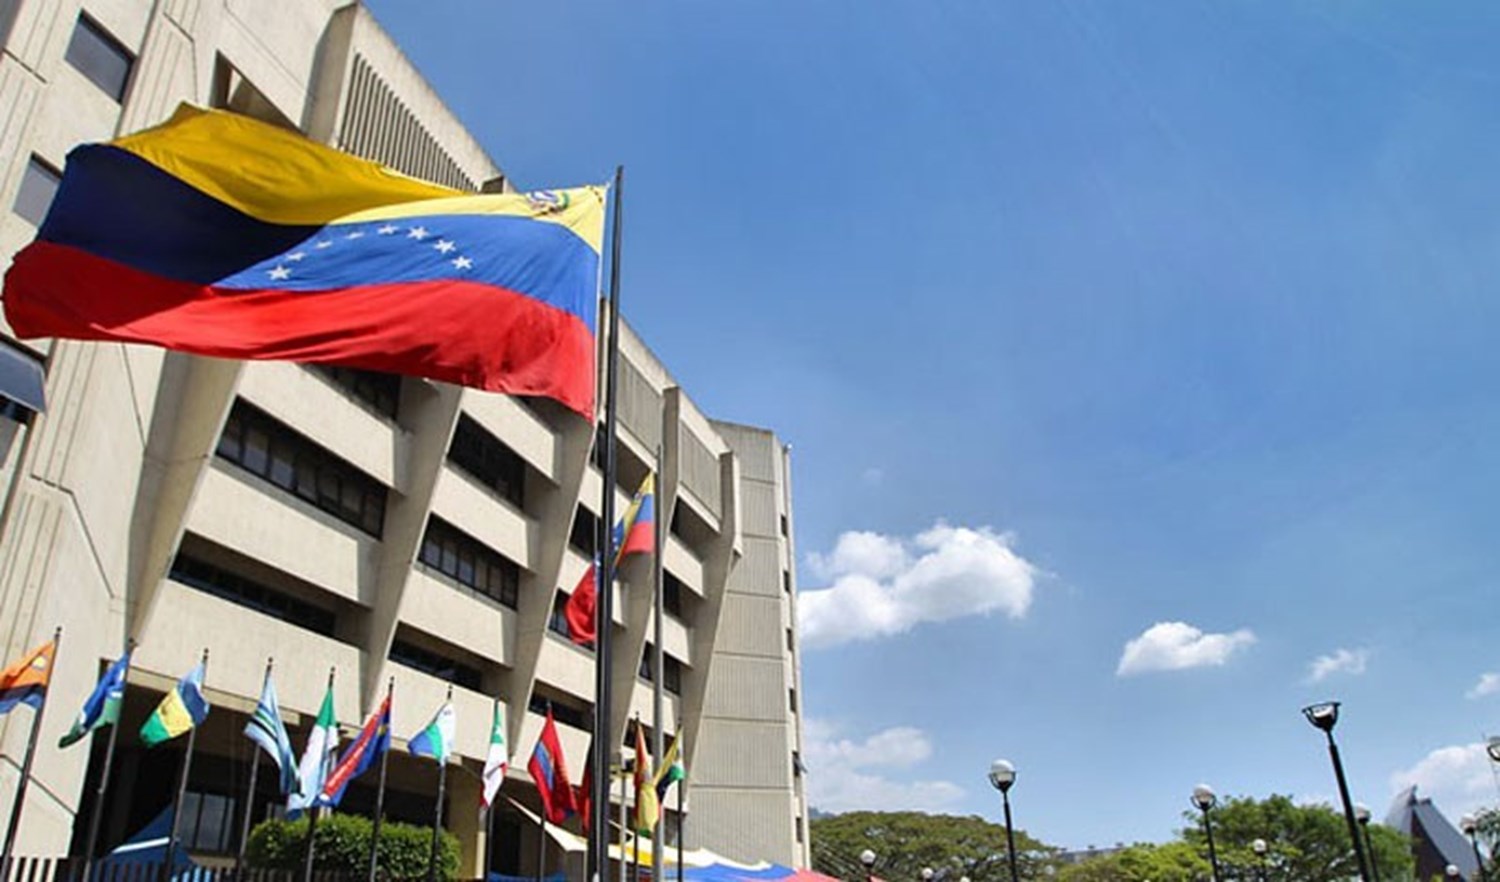 القضاء في فنزويلا يتقدم بطلب الأفصاح عن مجموعة جوايدو بأنها منظومة إرهابية